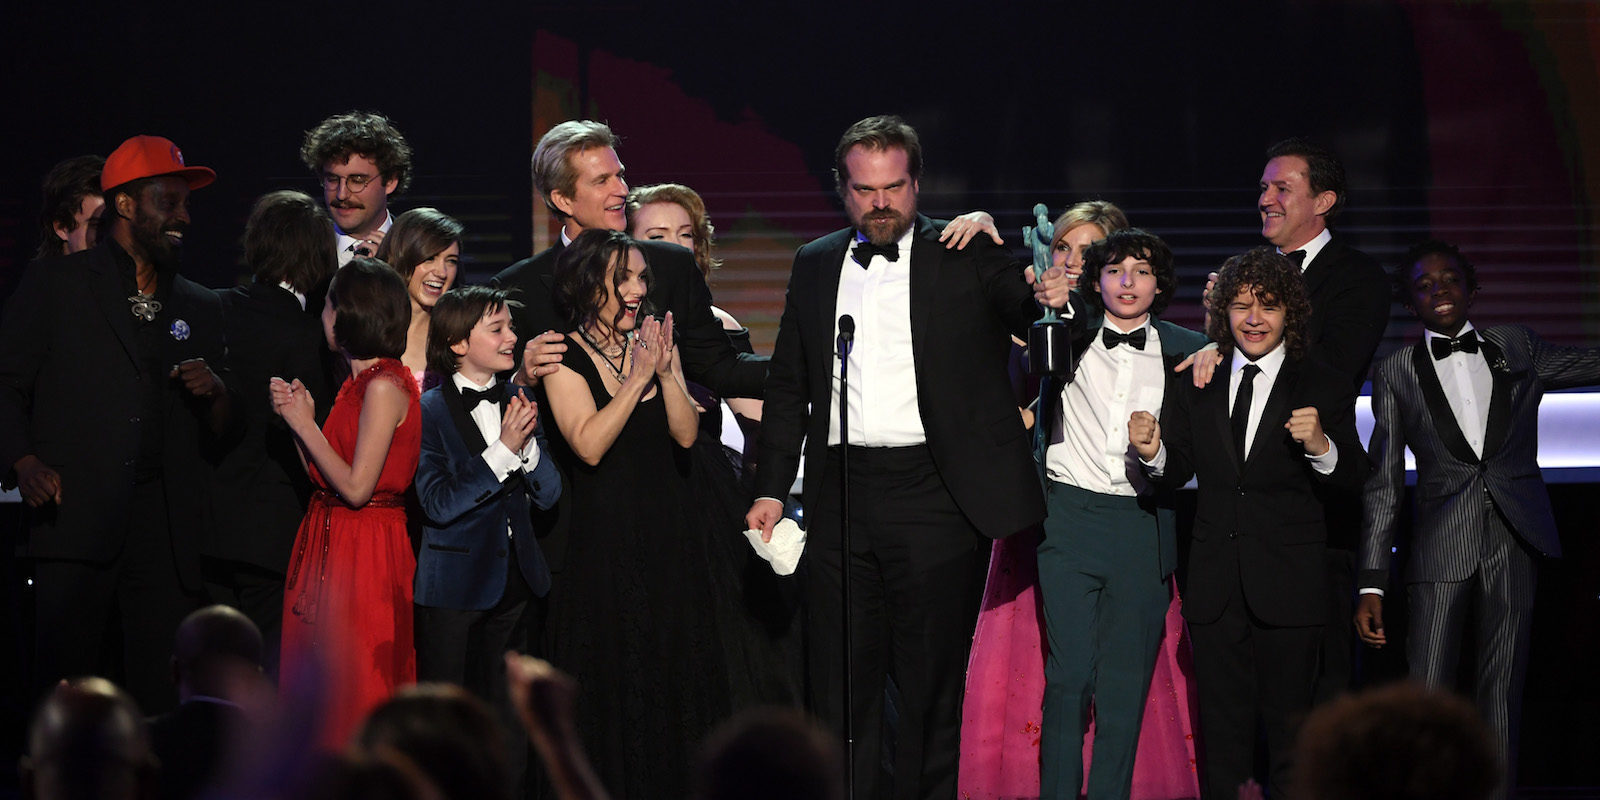 El reparto de 'Stranger Things' triunfa en la gala de premios del Sindicato de Actores